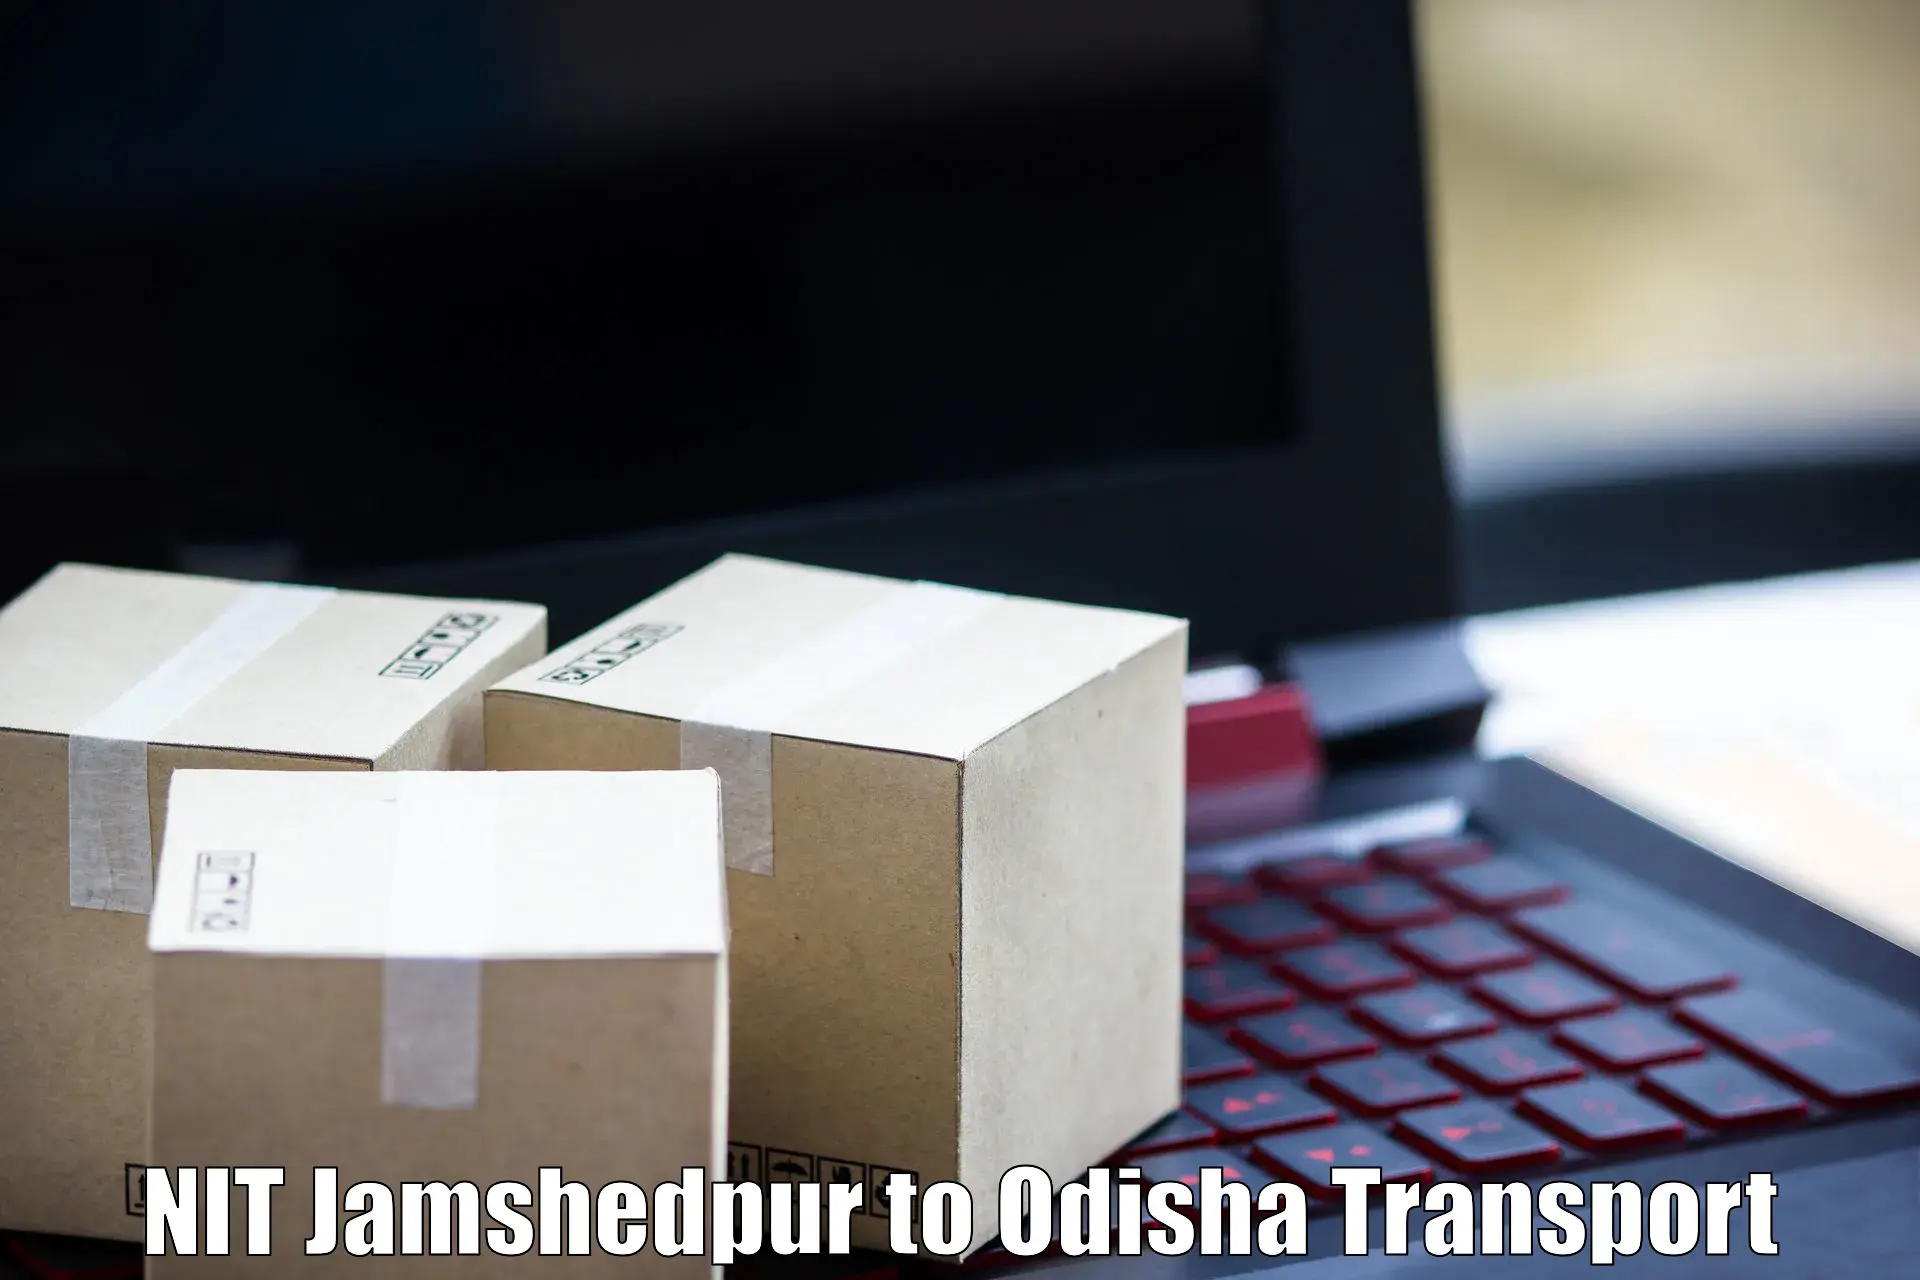 Furniture transport service NIT Jamshedpur to Baleswar